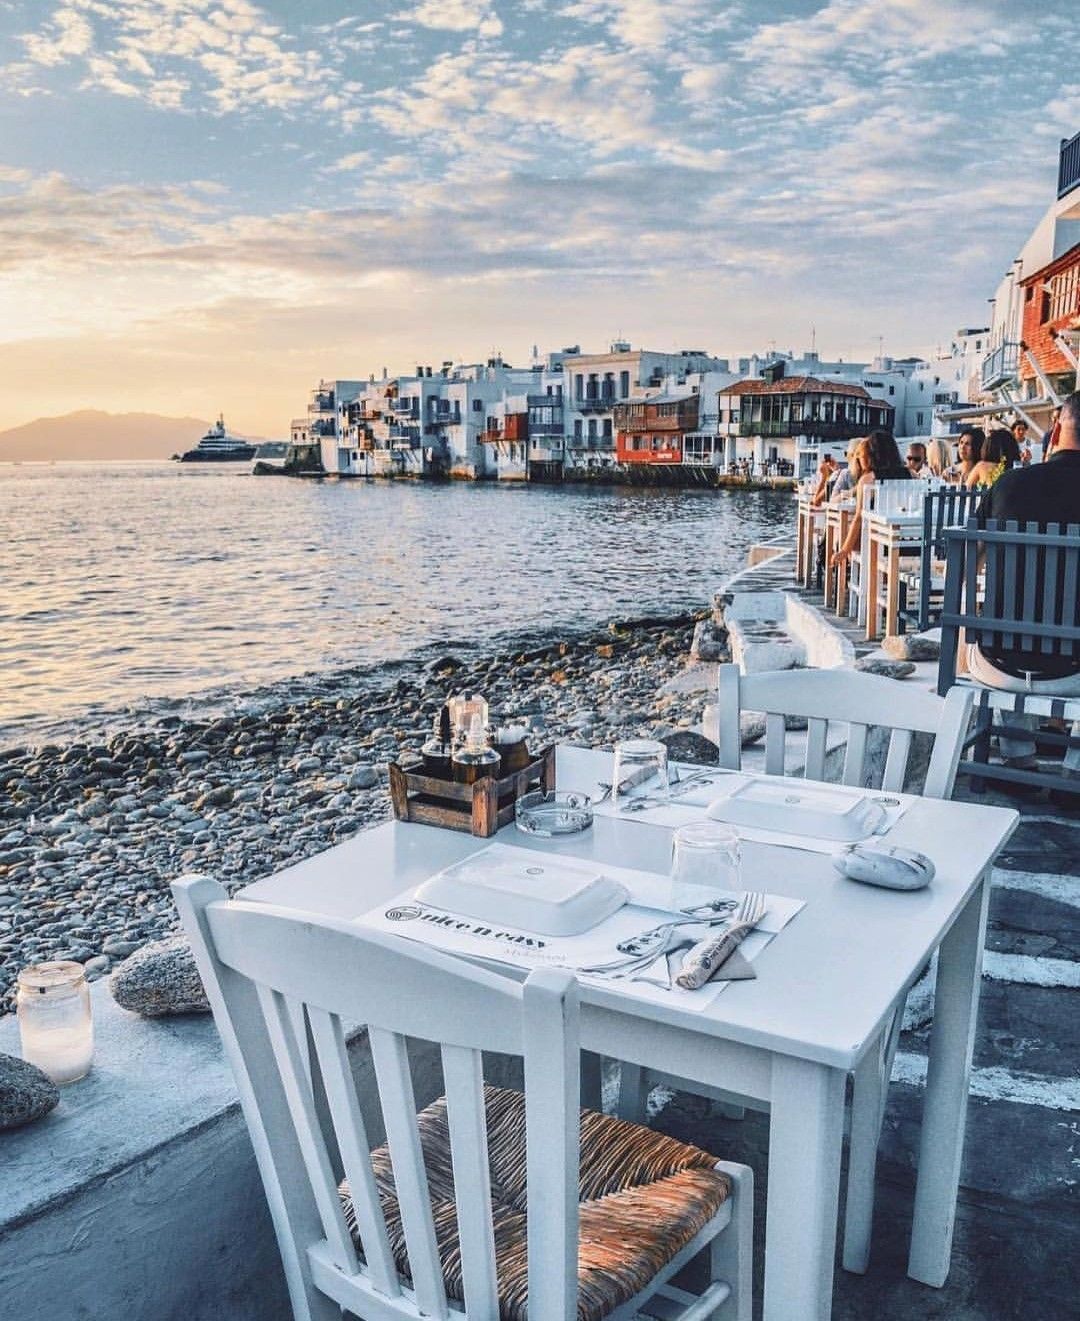 La meilleure période pour visiter la Grèce est ... indice, ce n'est PAS le mois d'août ! - La meilleure période pour visiter la Grèce est ... indice, ce n'est PAS le mois d'août !